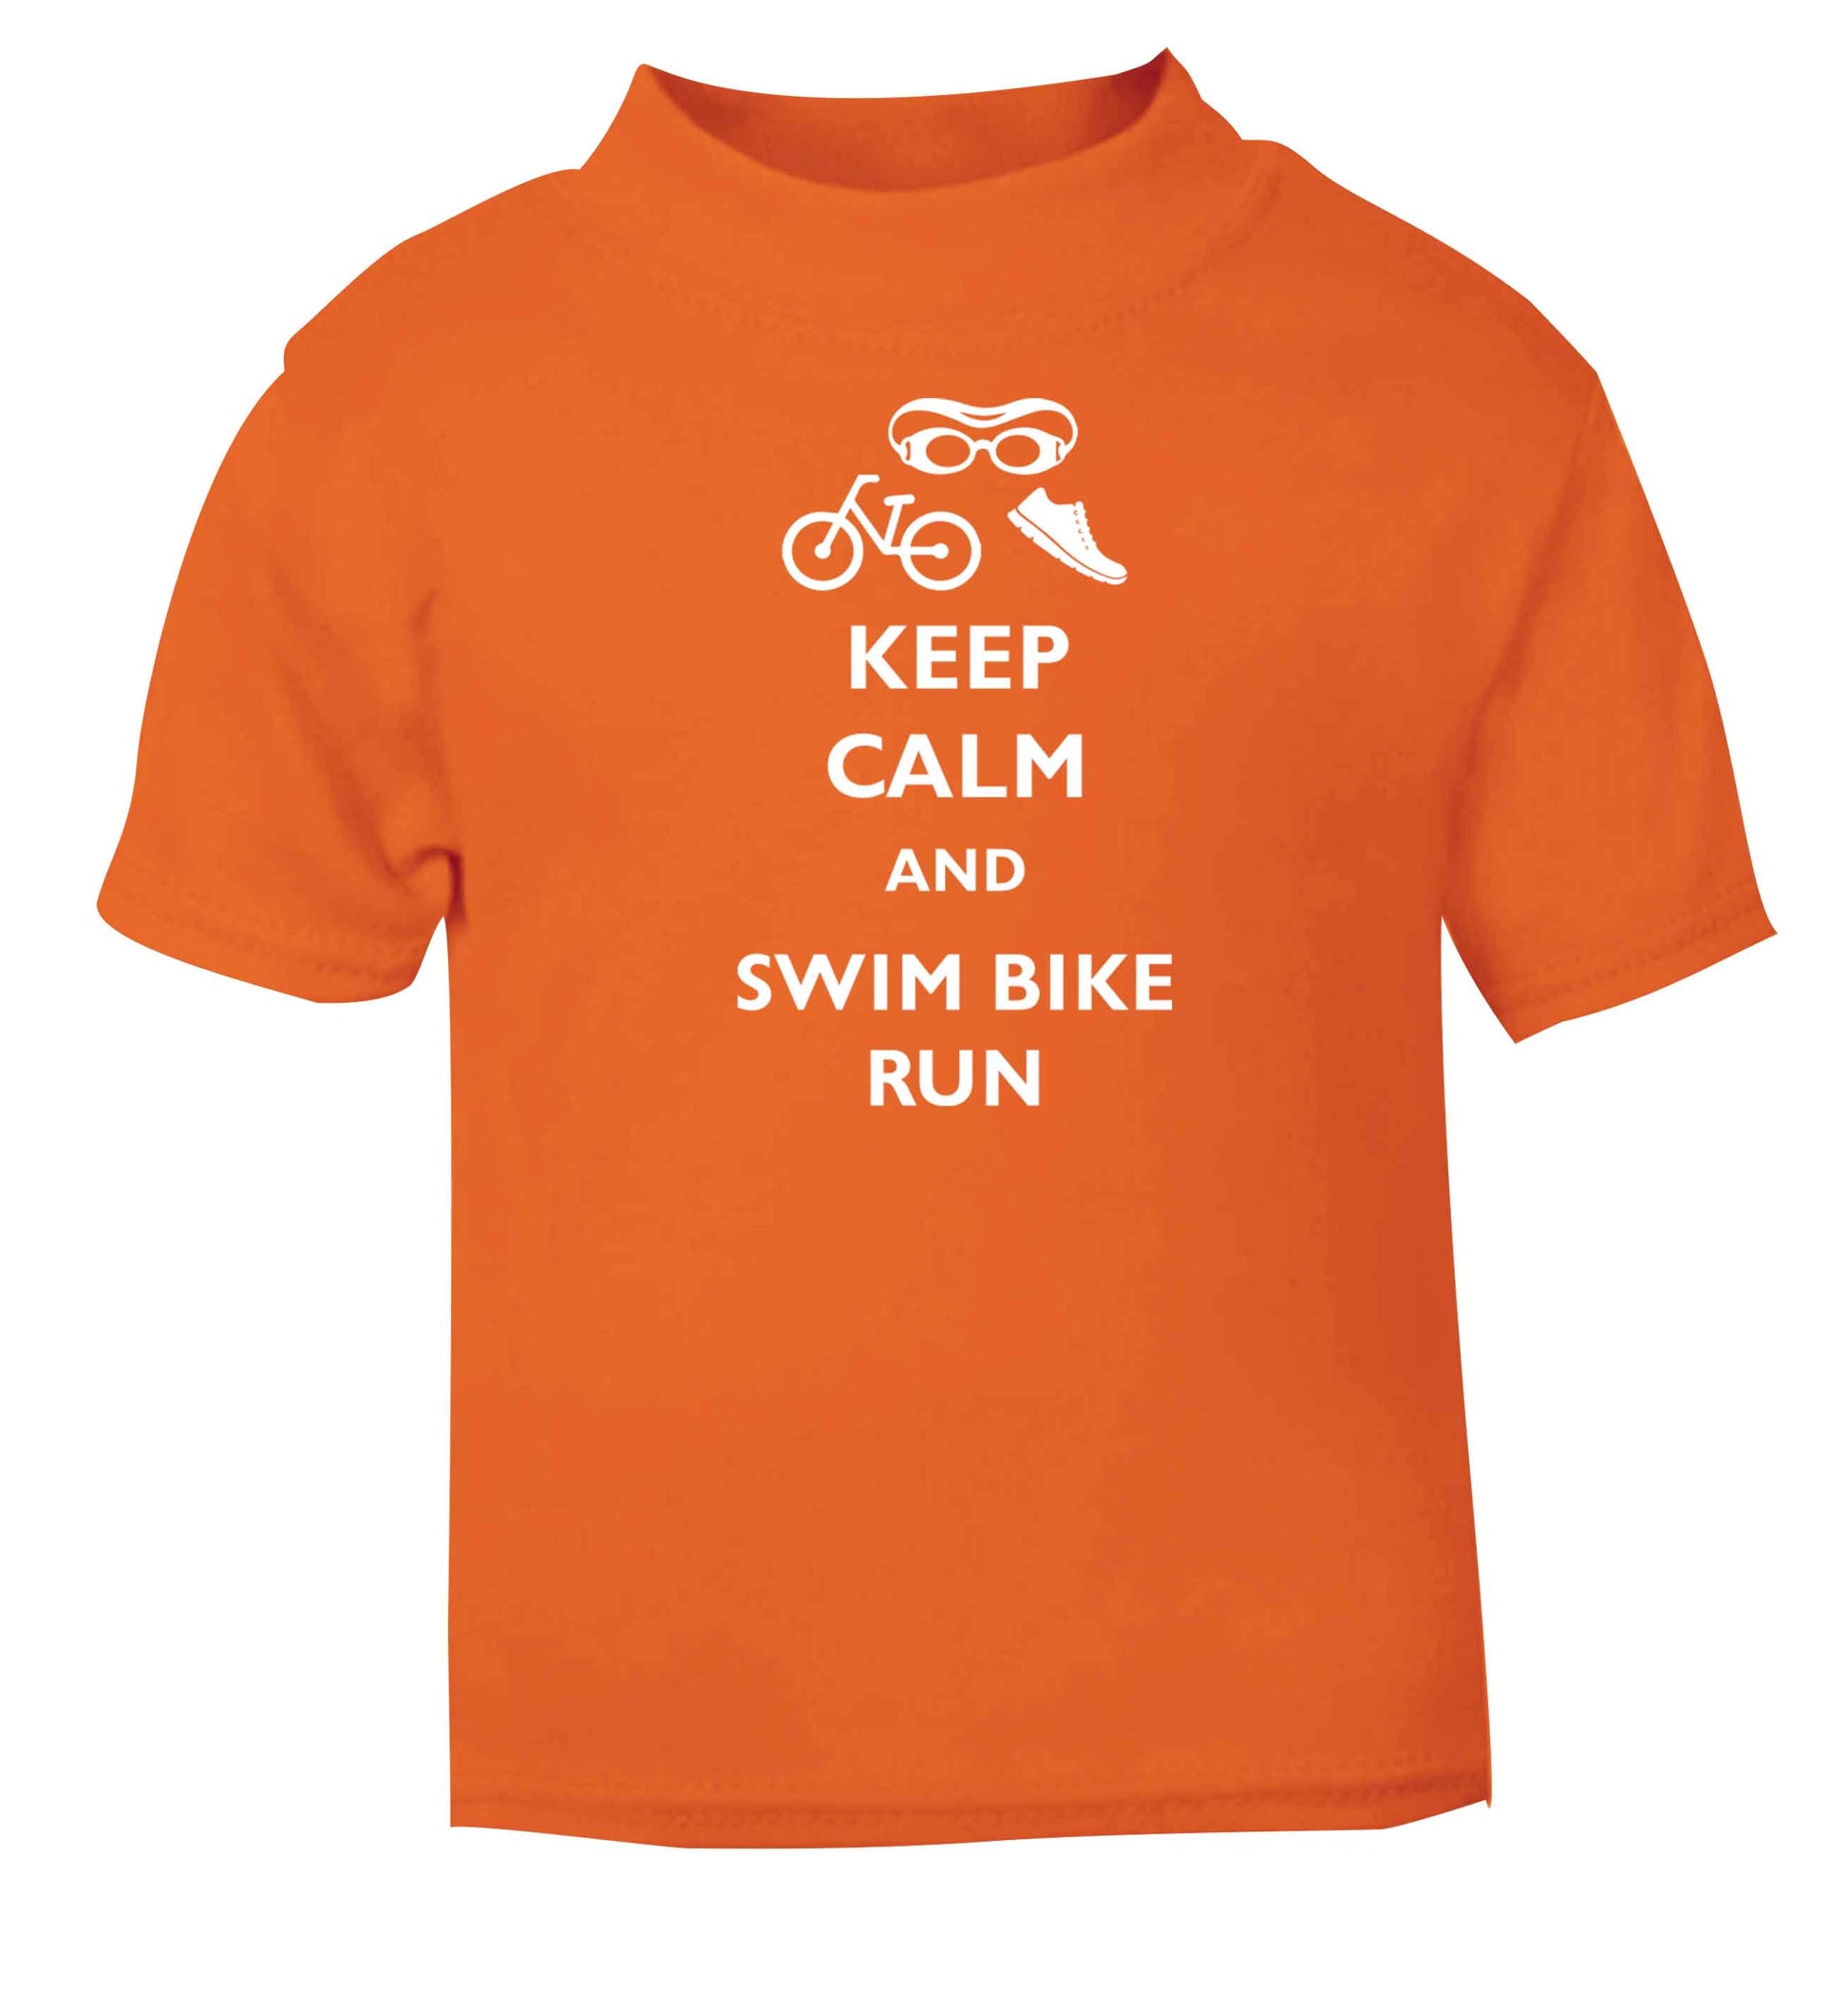 Keep calm and swim bike run orange baby toddler Tshirt 2 Years